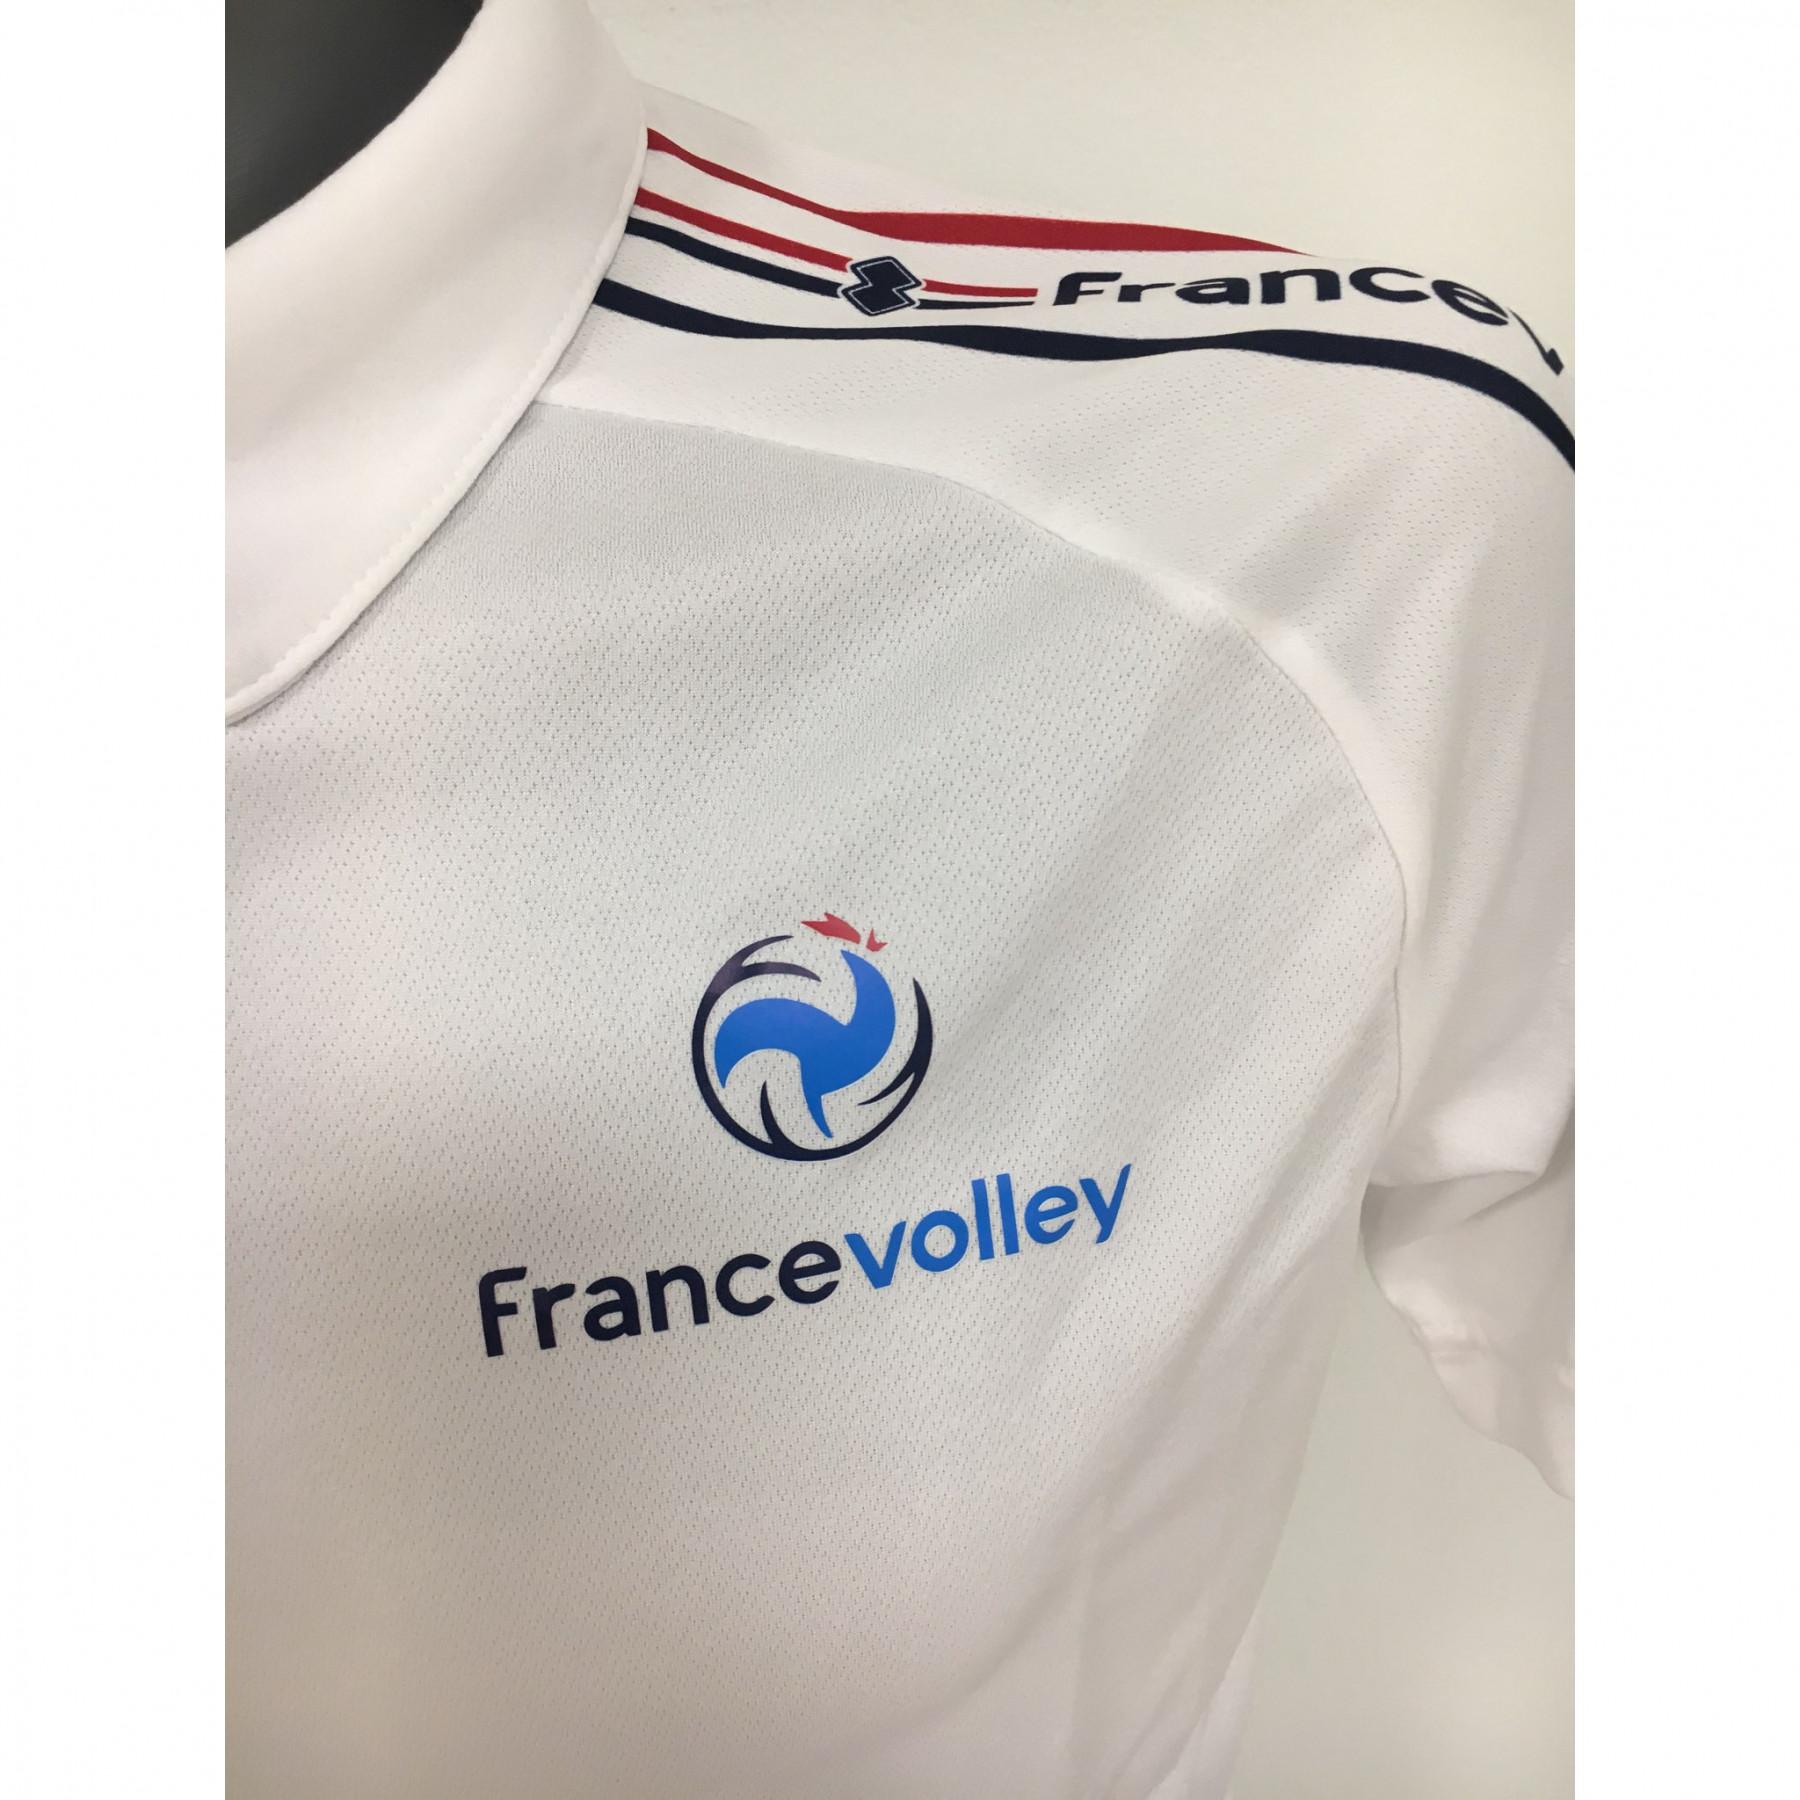 Polo shedir team of France 2020